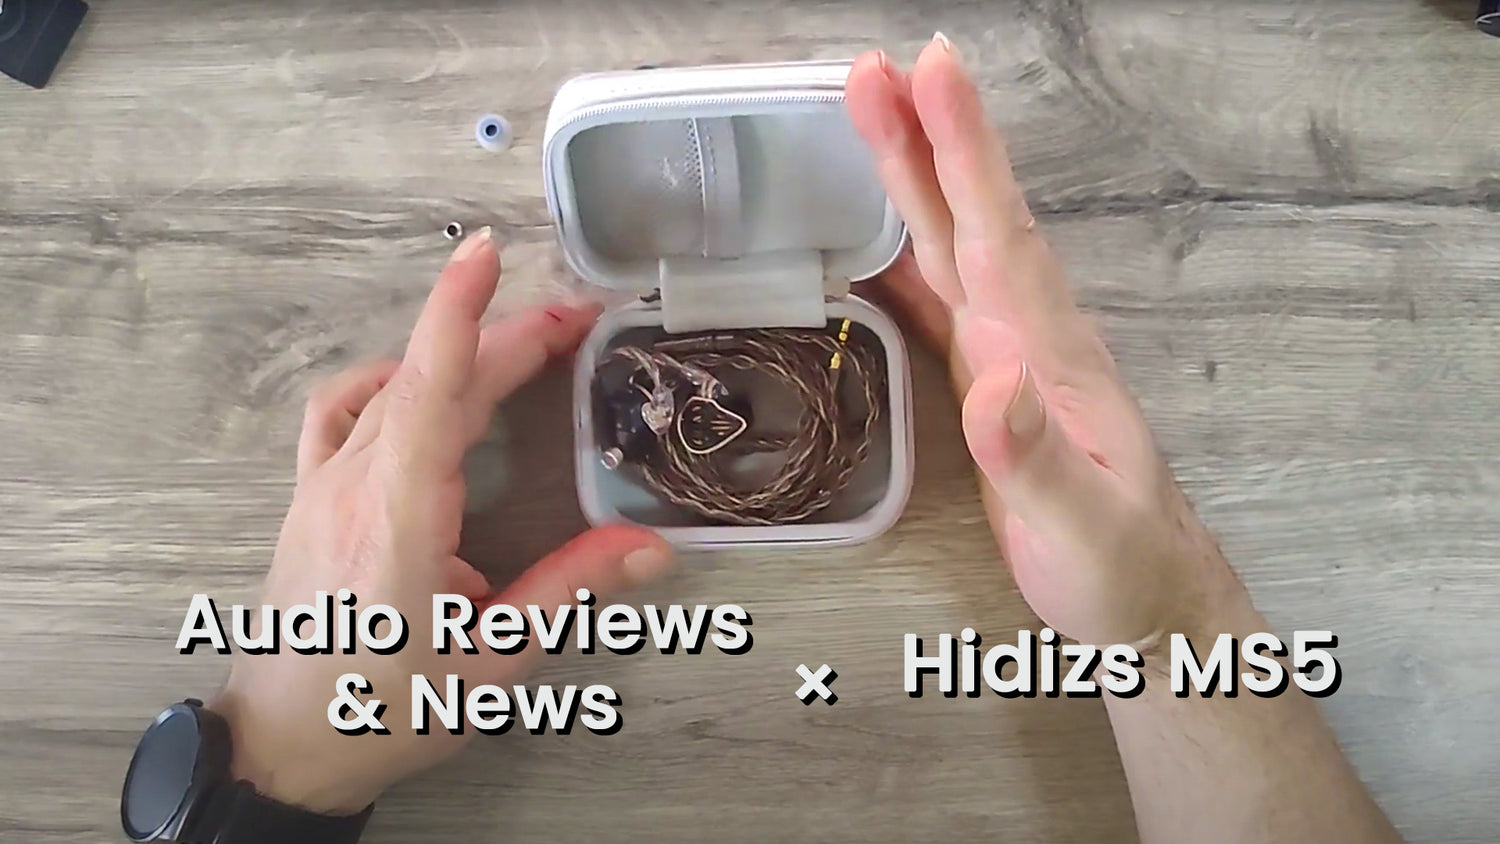 Hidizs MS5 reviews -  Audio Reviews & News (Unboxing)